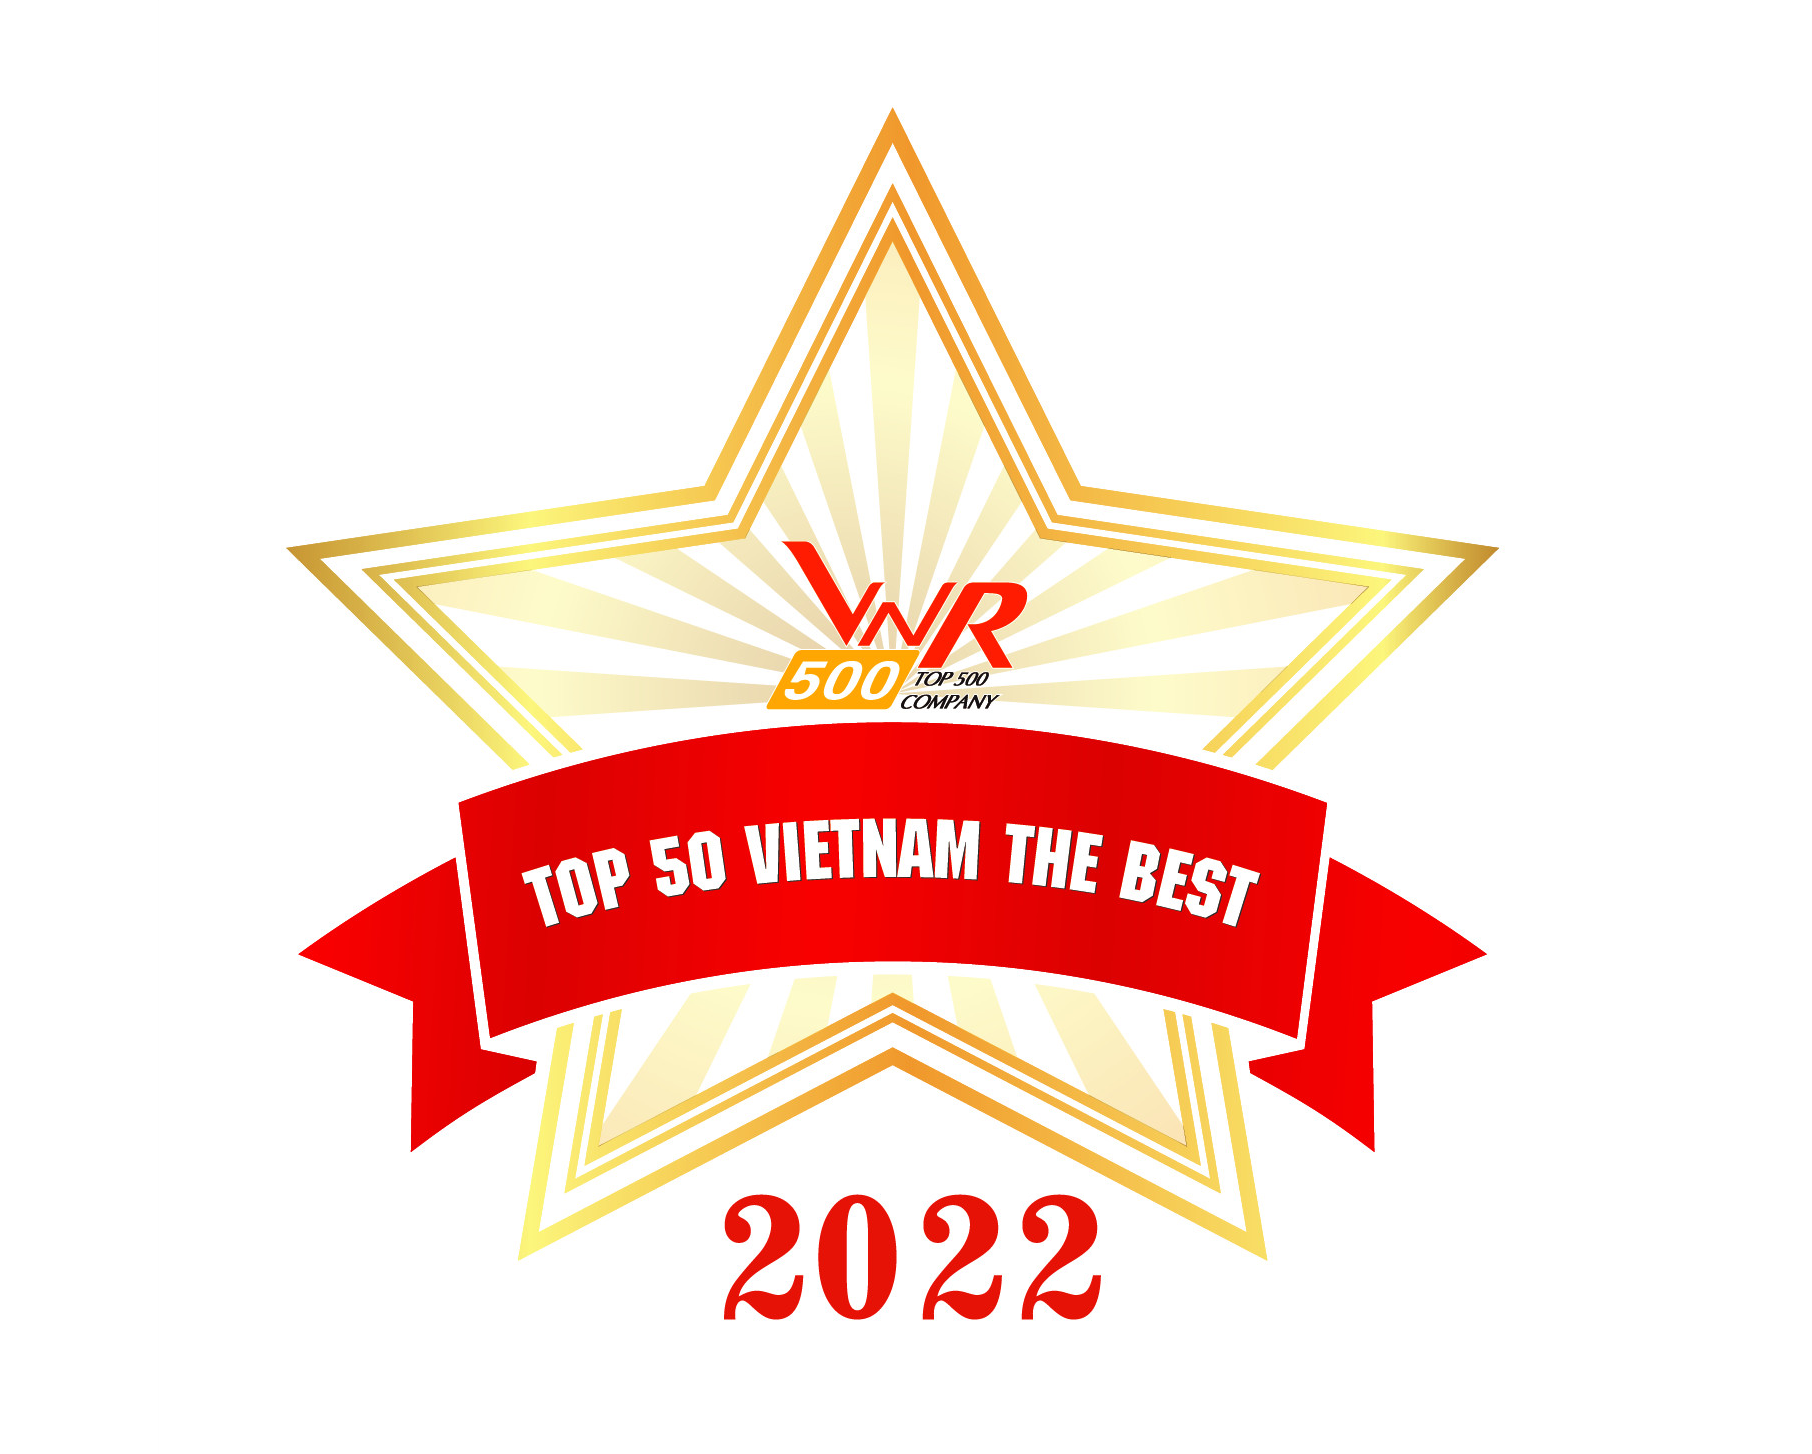 Top 50 Doanh nghiệp xuất sắc nhất Việt Nam năm 2022 - Top 50 Vietnam the Best